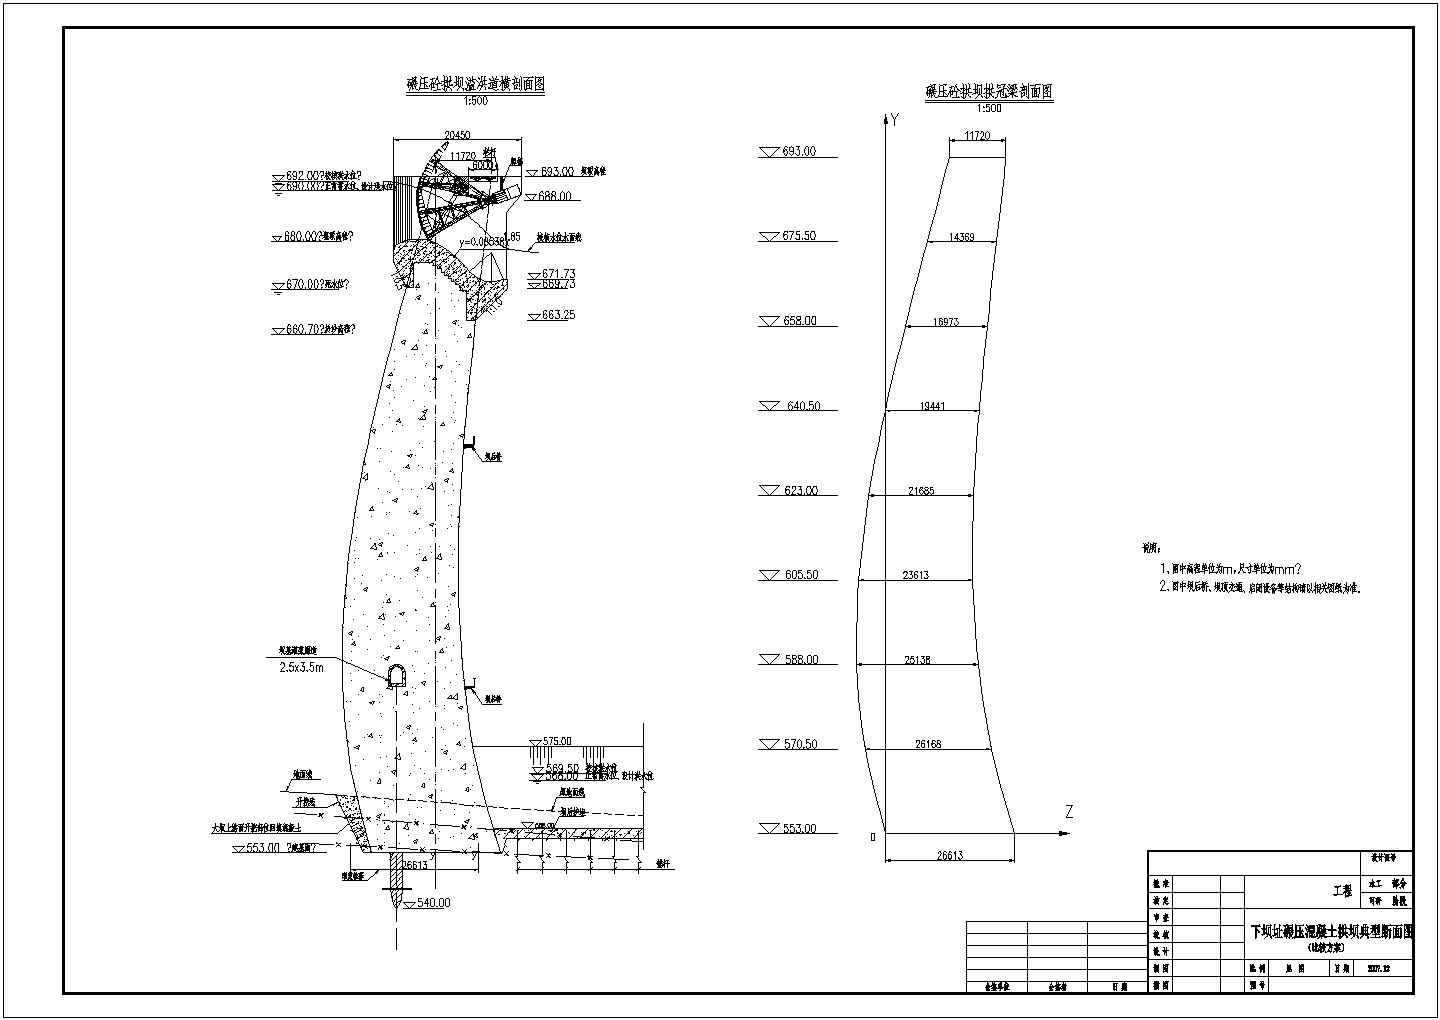 初步设计阶段对数螺旋拱坝结构布置图